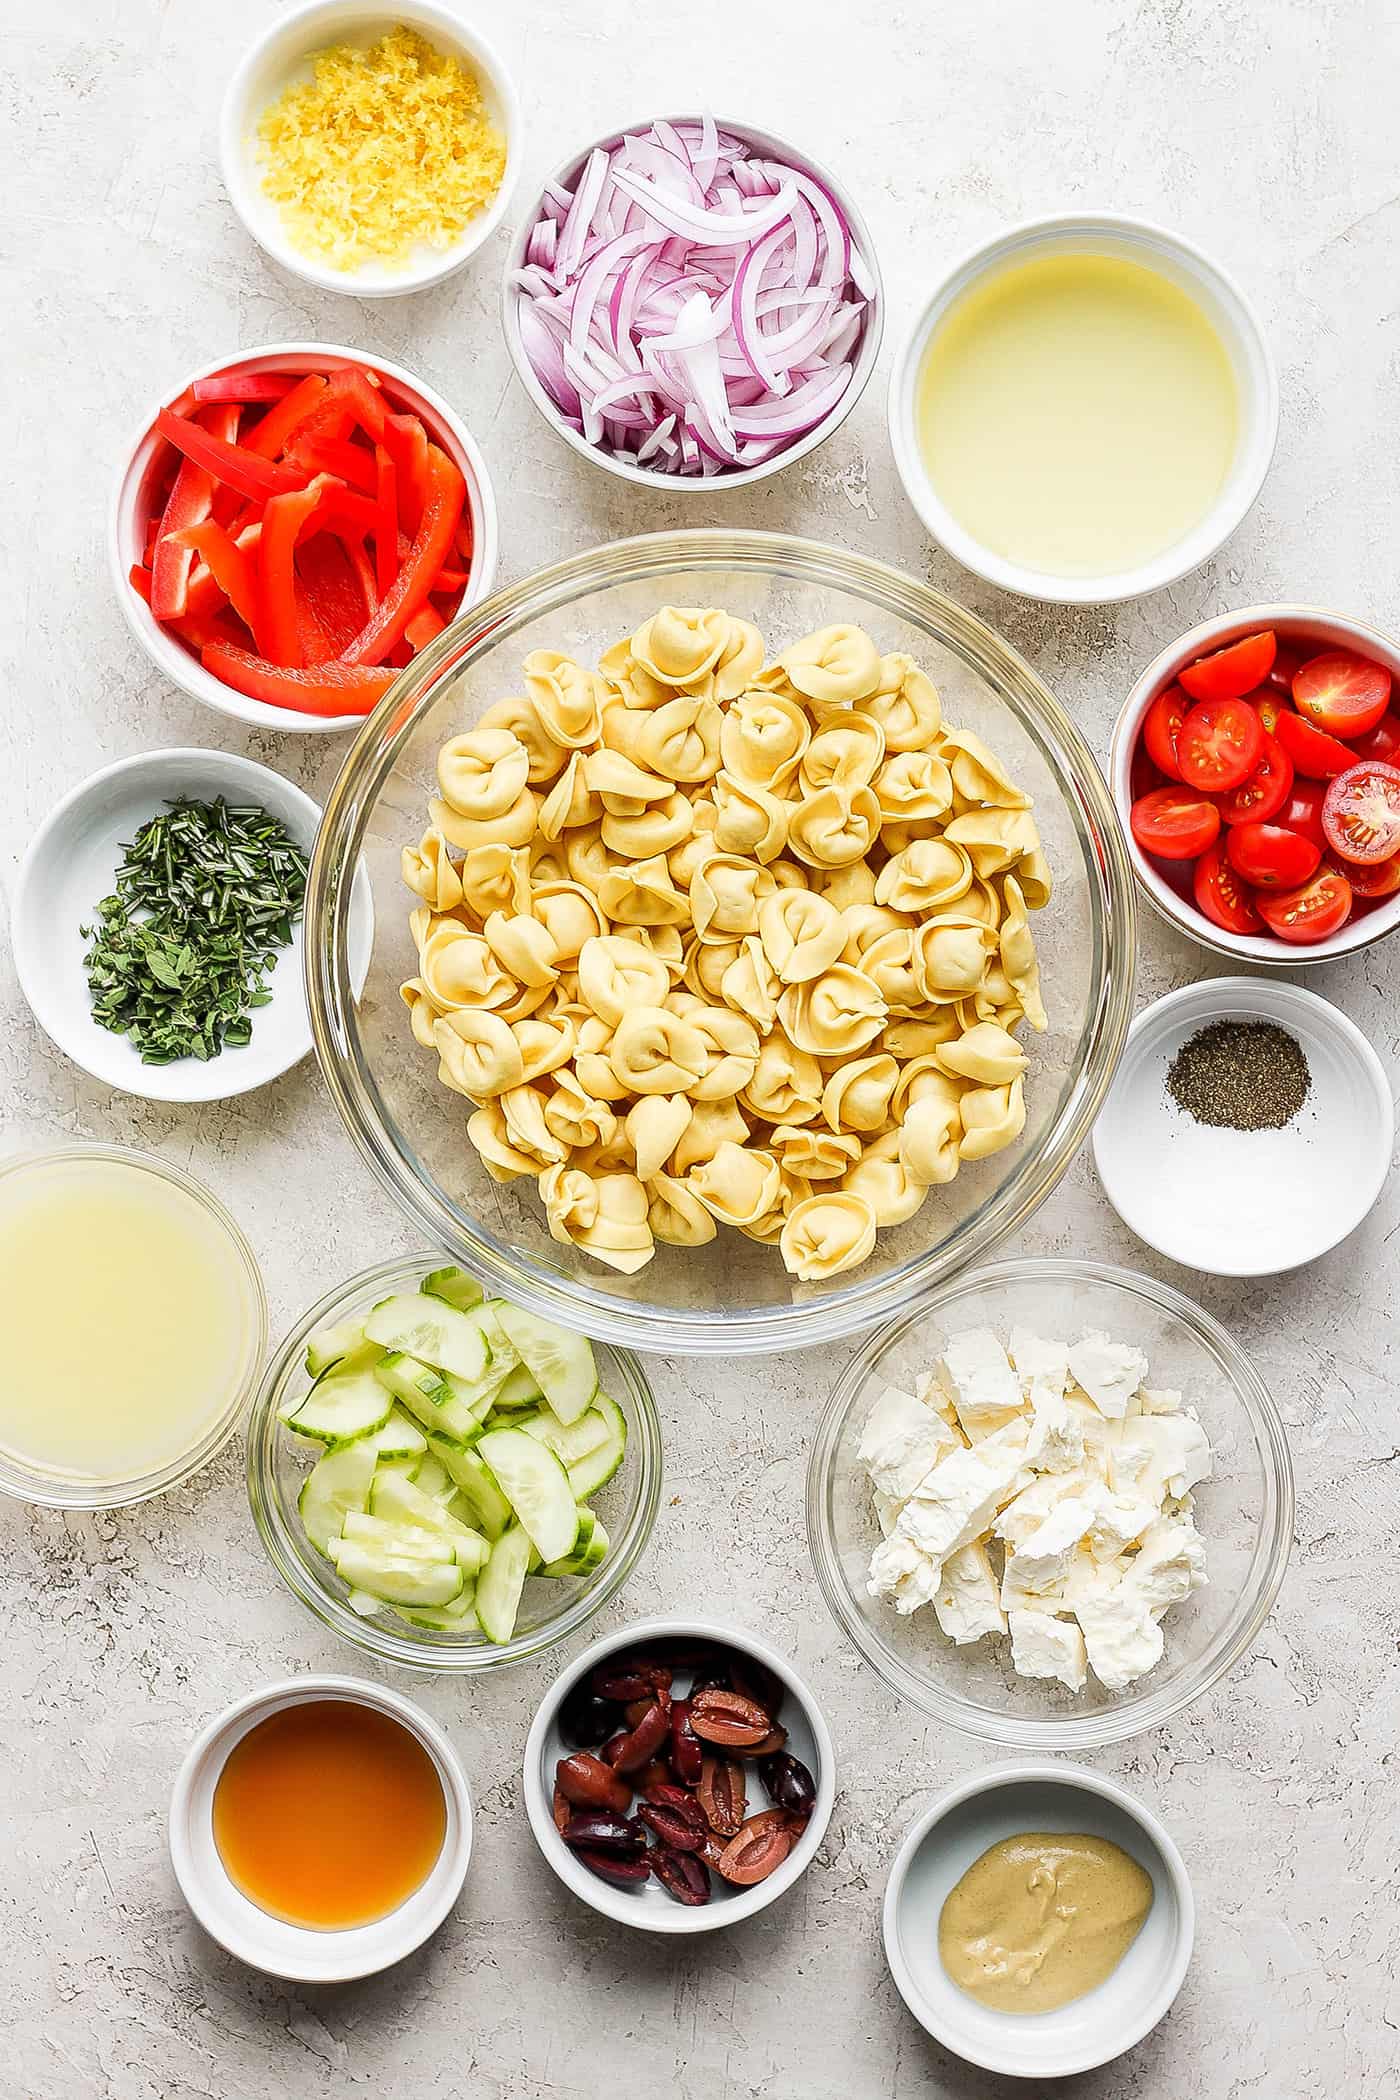 Ingredients needed for Greek tortellini salad: tortellini, vegetables, cheese, dressing.